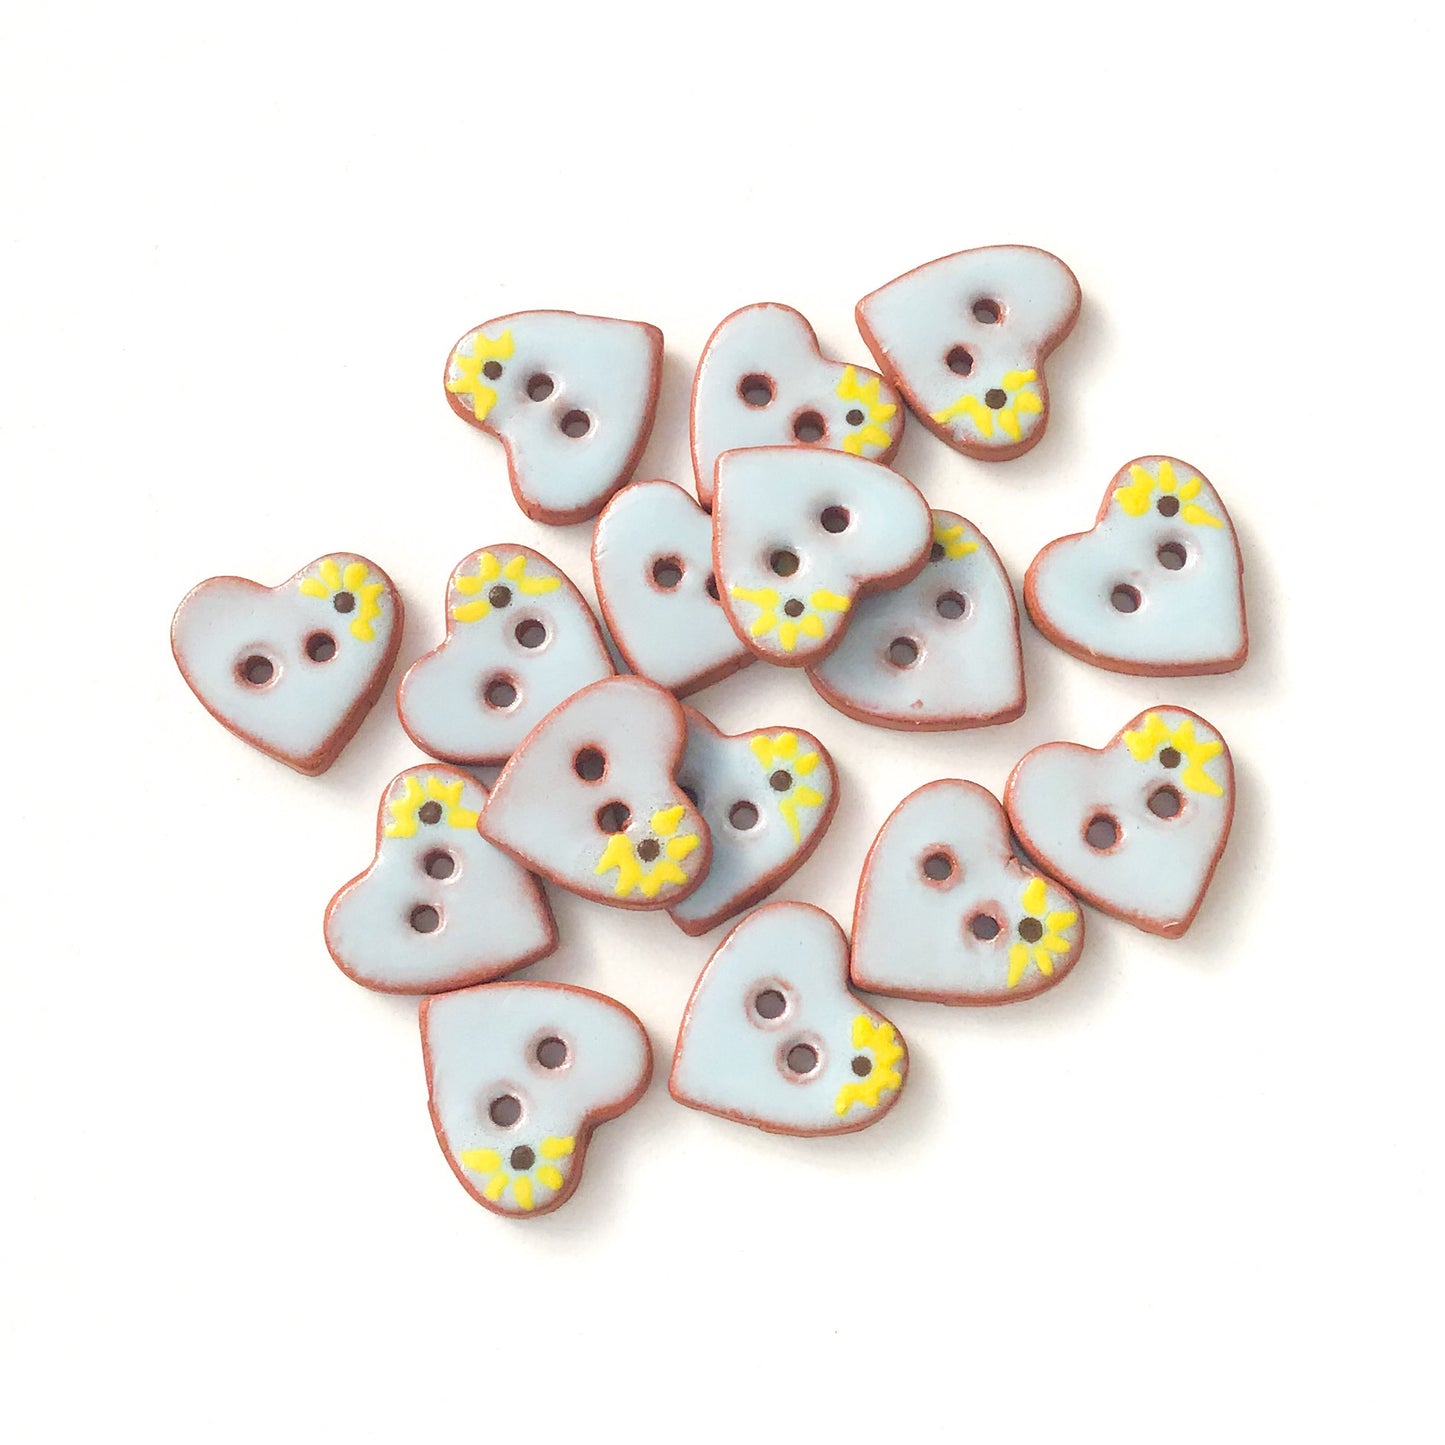 Little Blue Hearts & Flowers Buttons - Ceramic Heart Buttons - 5/8" x 9/16"